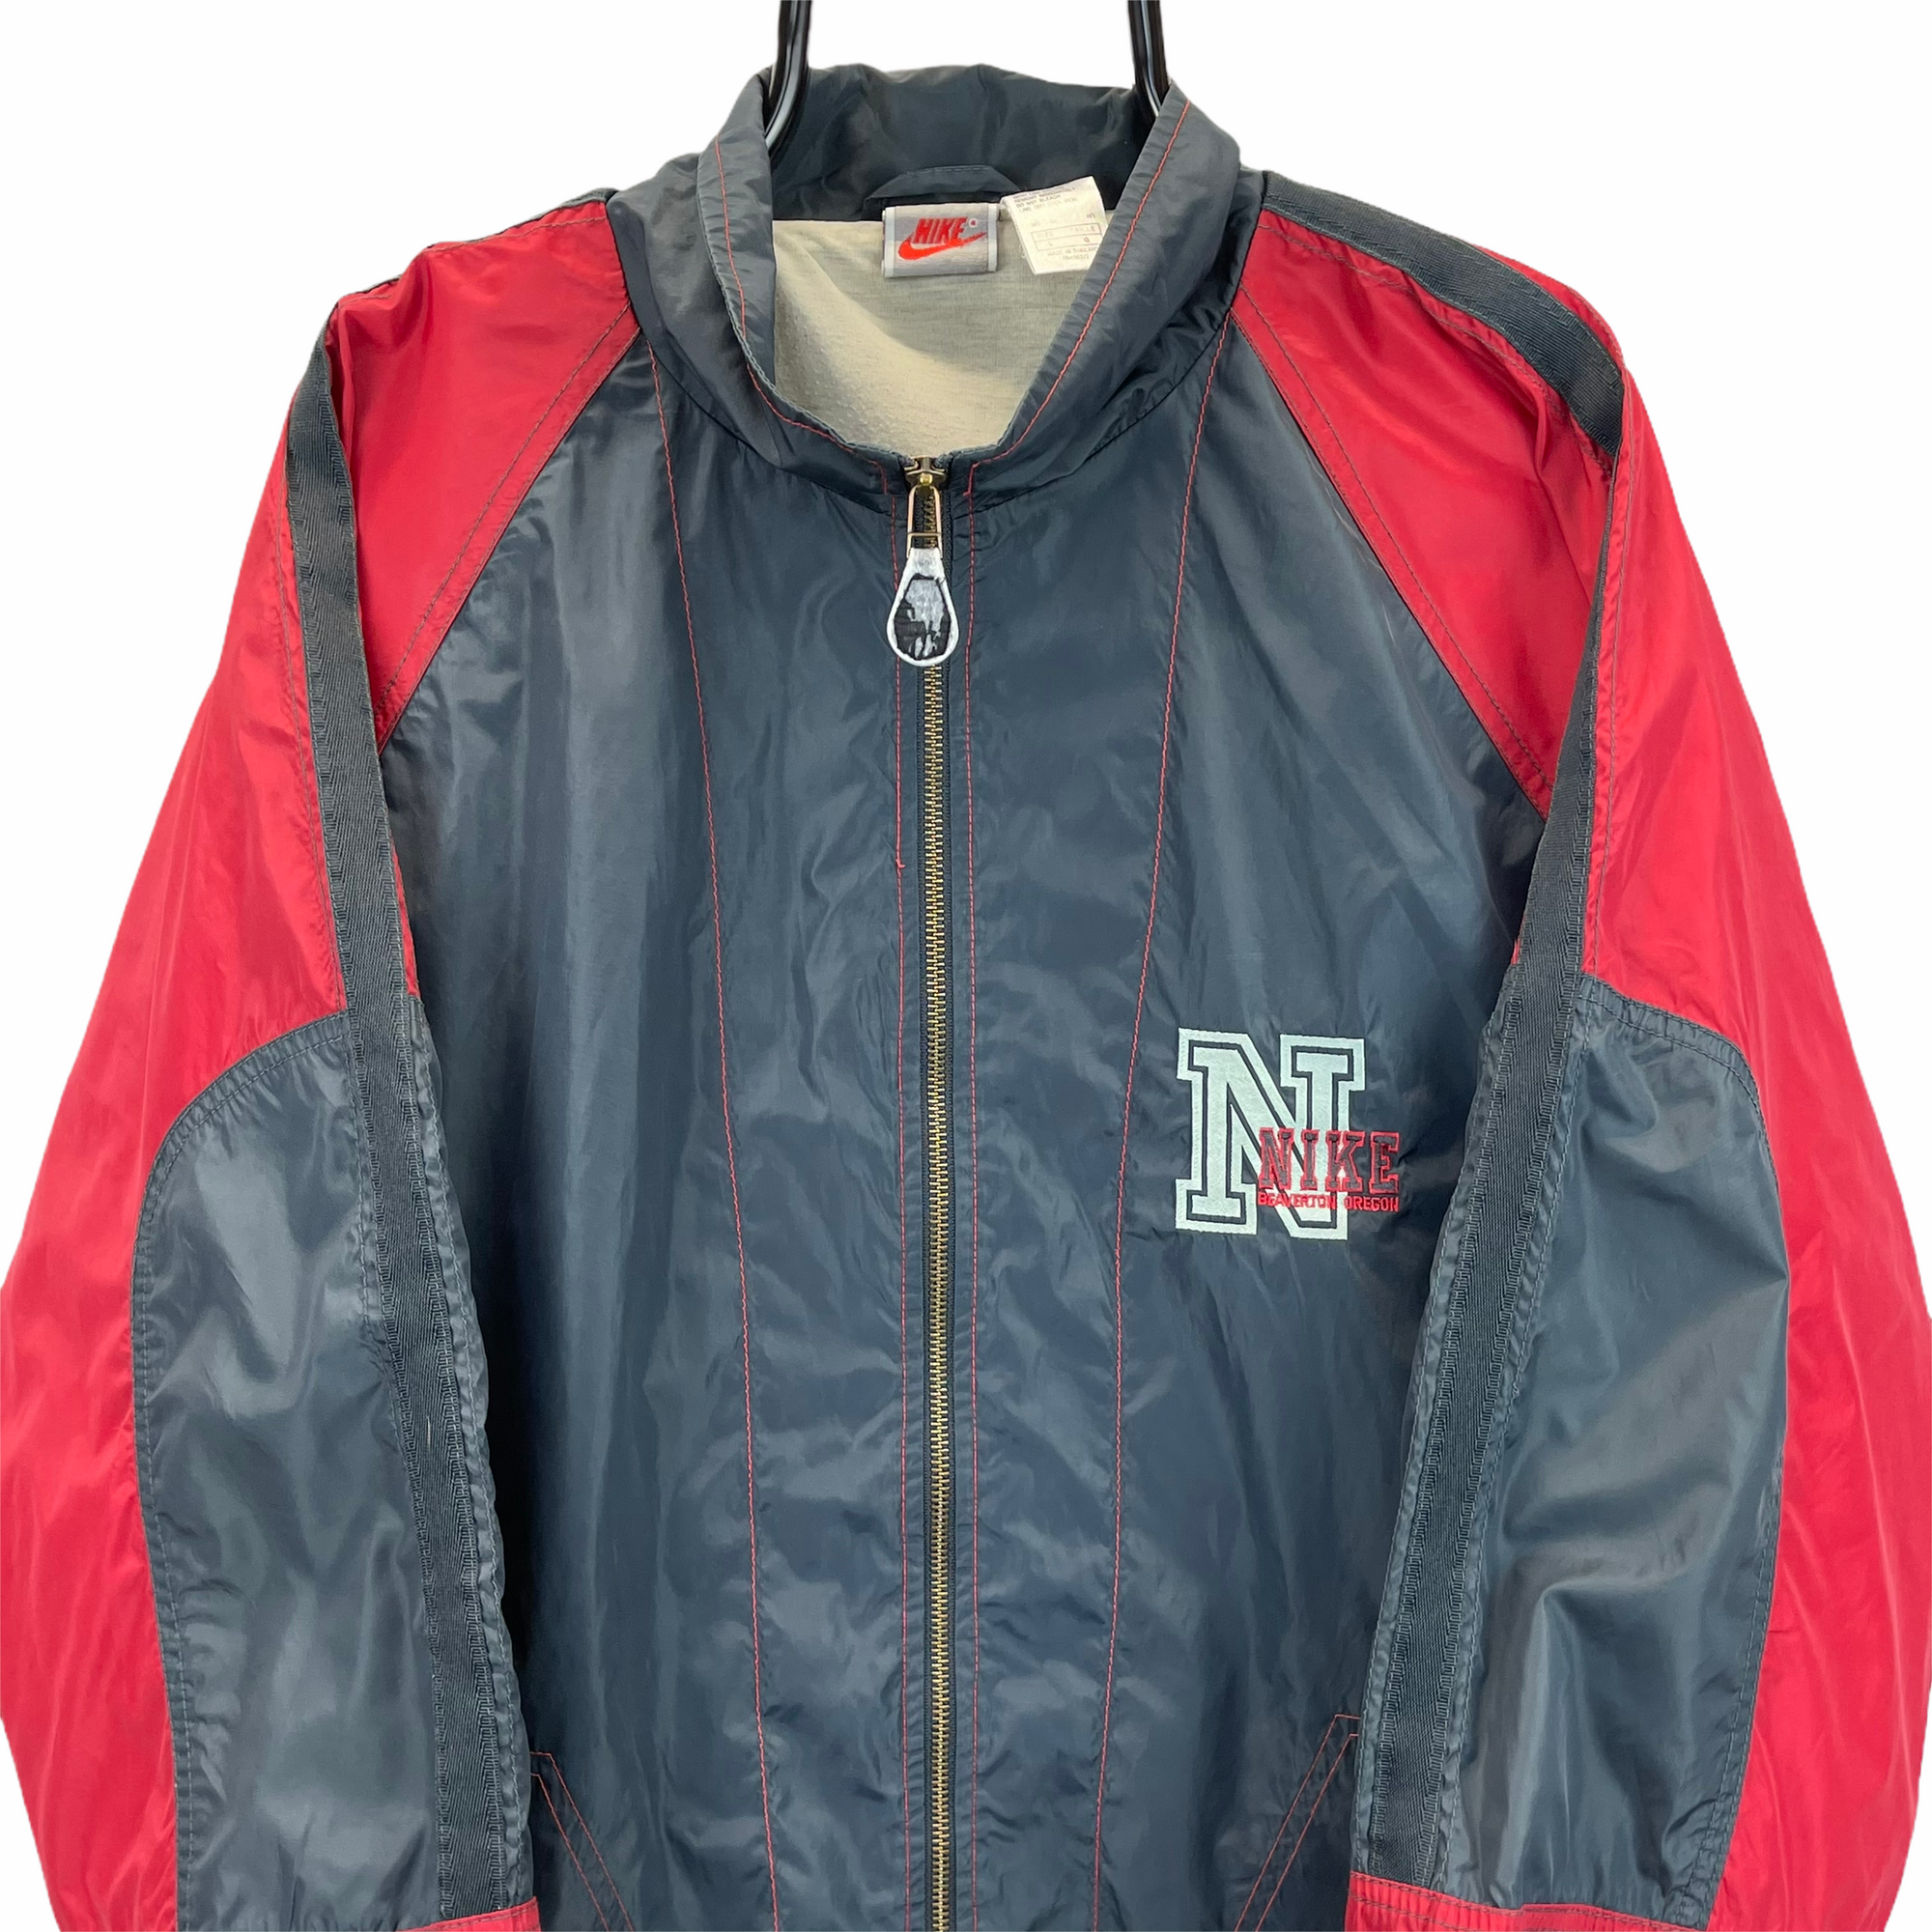 Vintage 80s Nike Track Jacket in Red & Dark Grey - Men's XL/Women's XXL